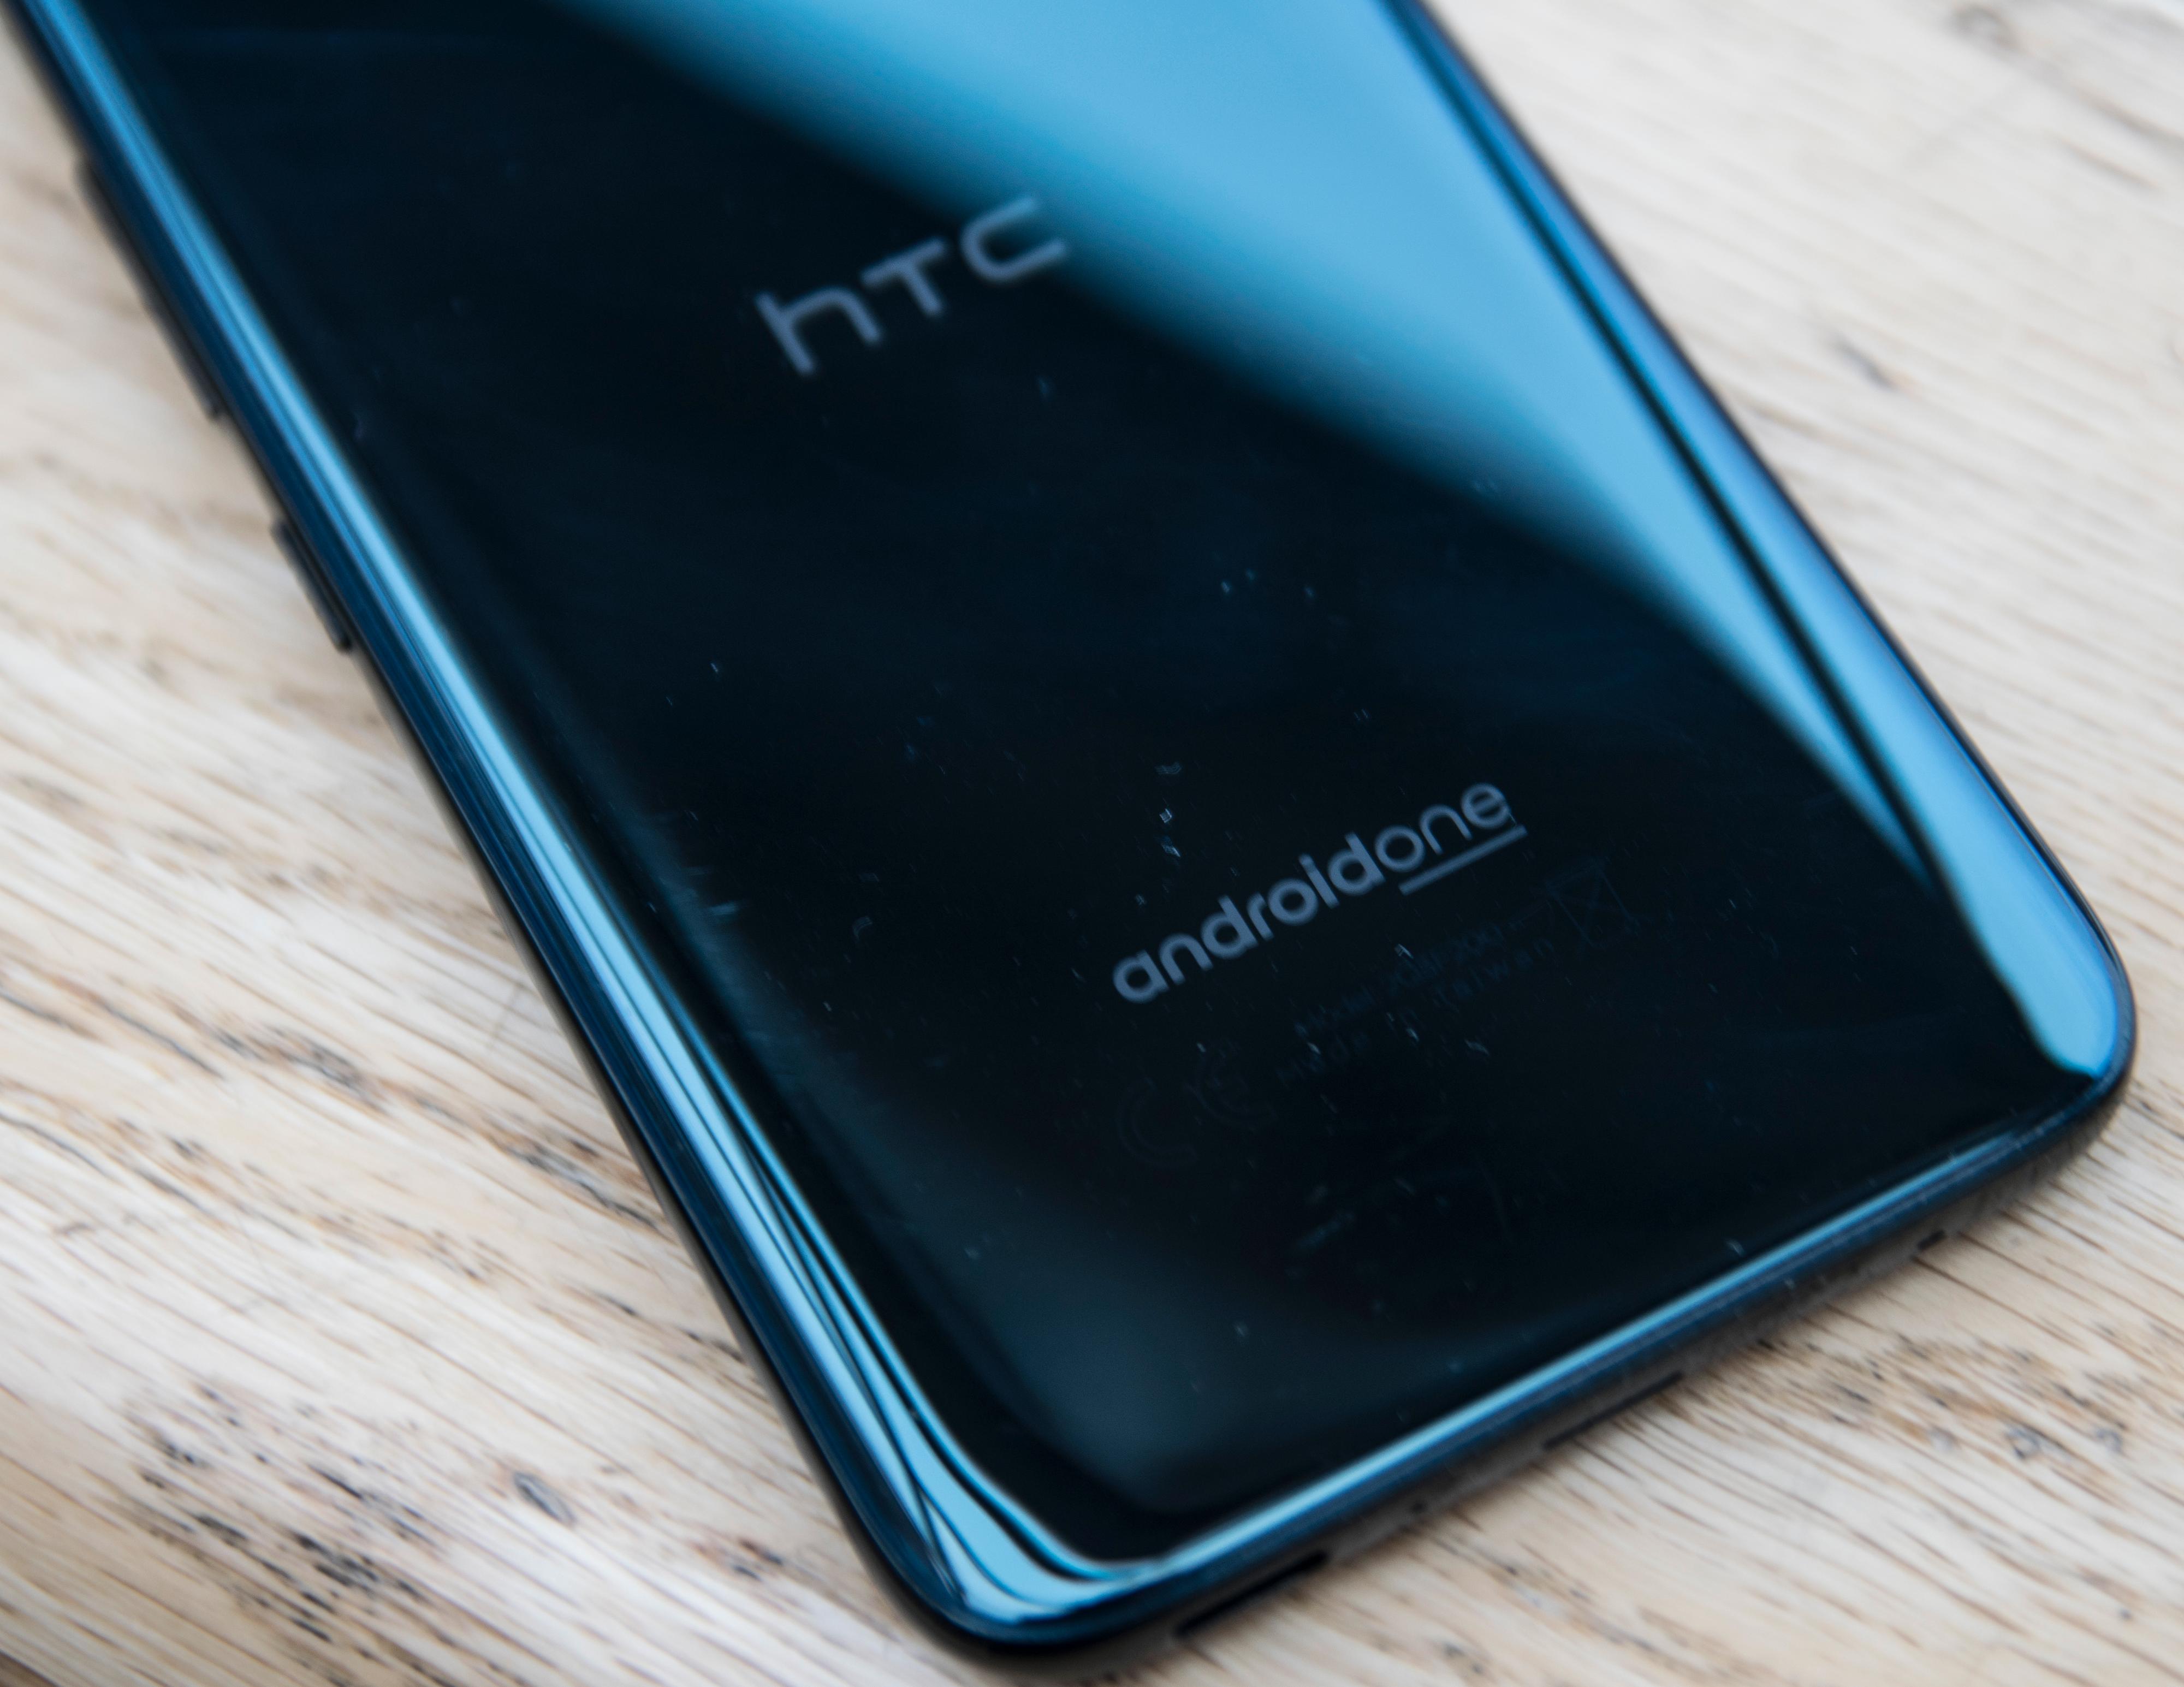 Android One betyr at denne telefonen nesten utelukkende kjører oppdatert programvare rett fra Google. Unntaket er noen små funksjonstillegg HTC har lagt inn.